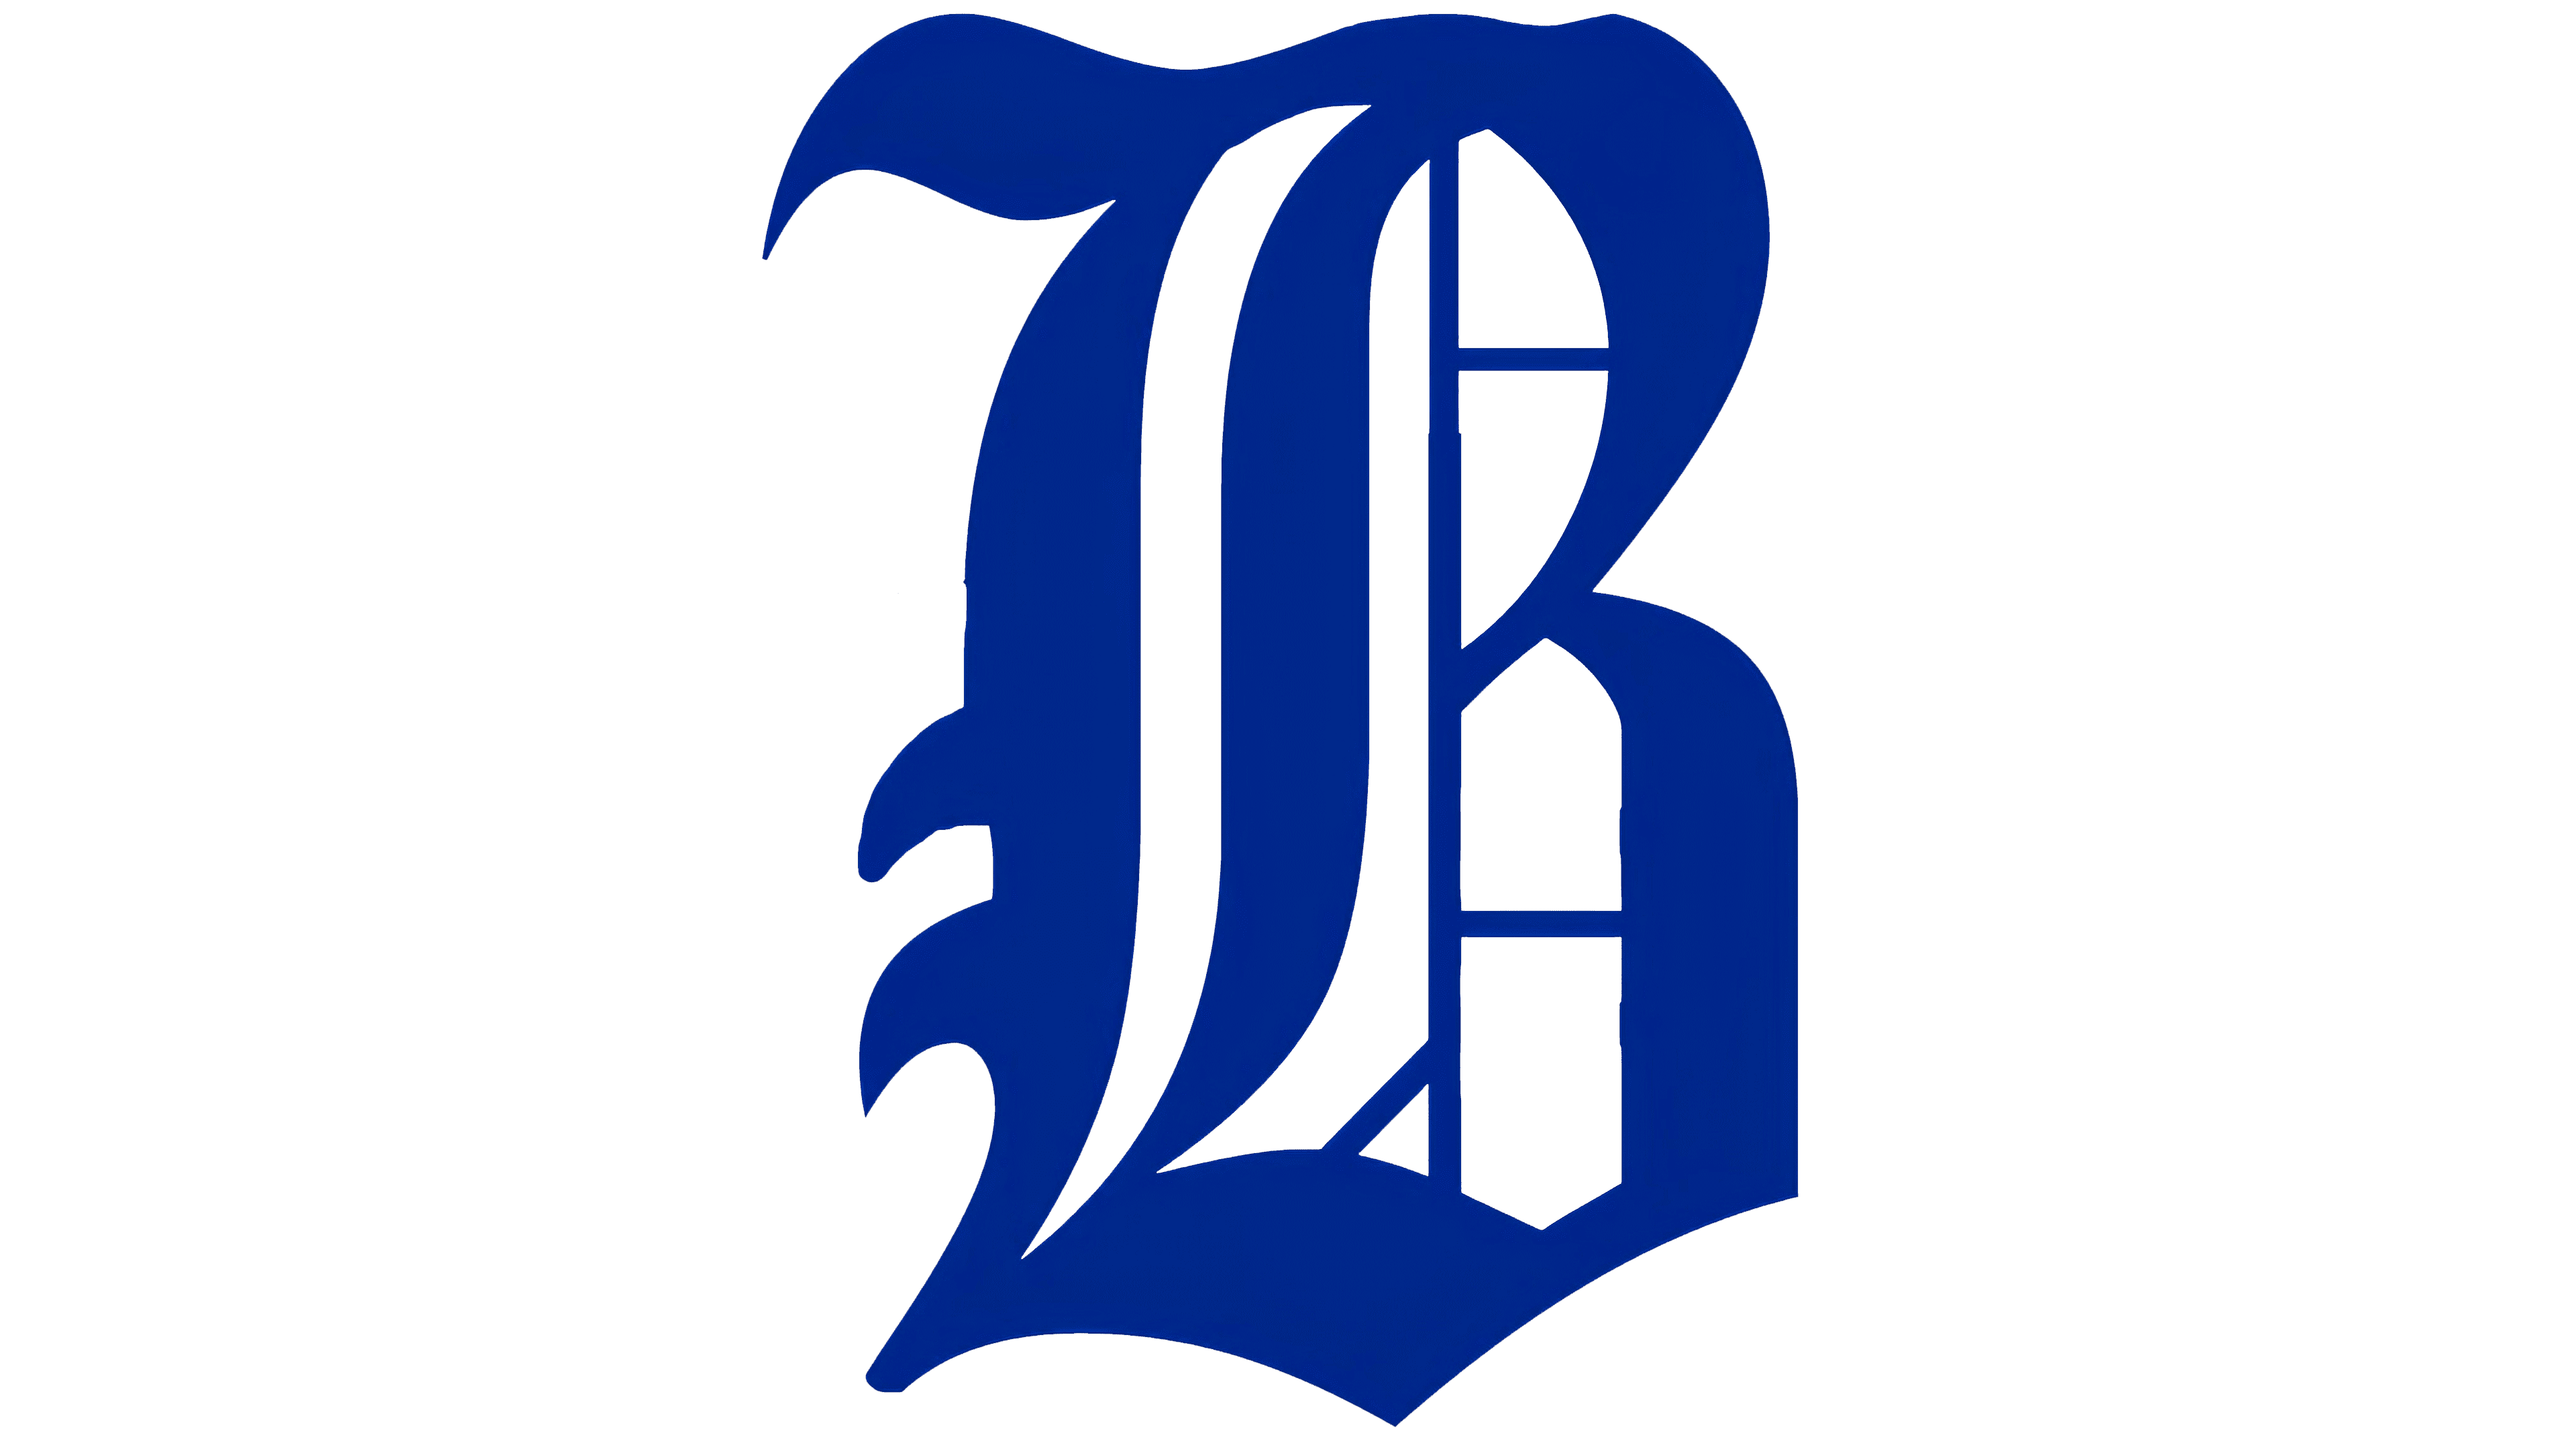  Brooklyn Dodgers Logo photo size 8x10 Unsigned #1 : Hogar y  Cocina